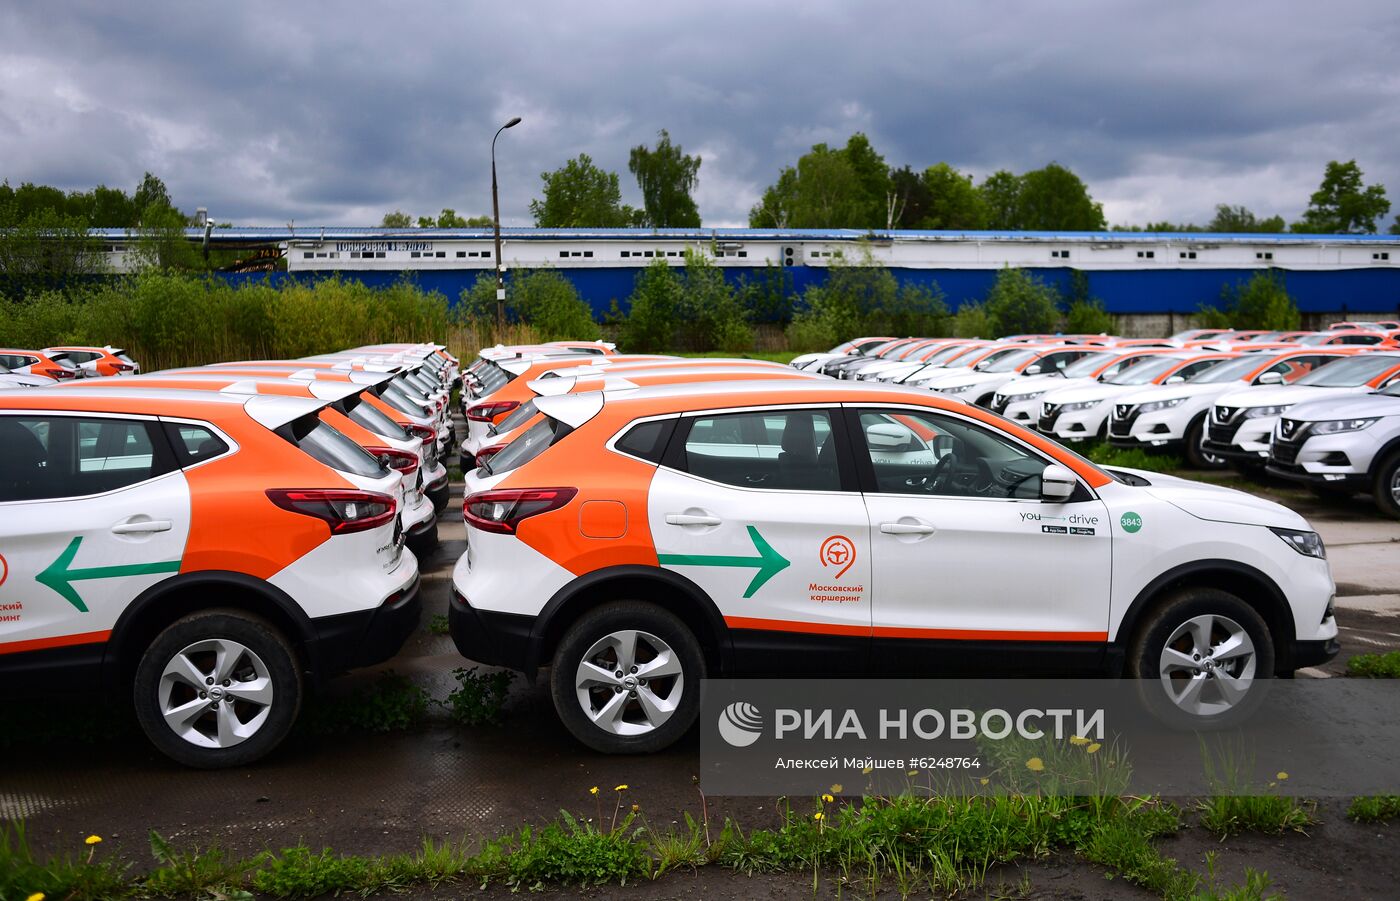 Сервисы каршеринга частично возобновят работу в Москве с 25 мая